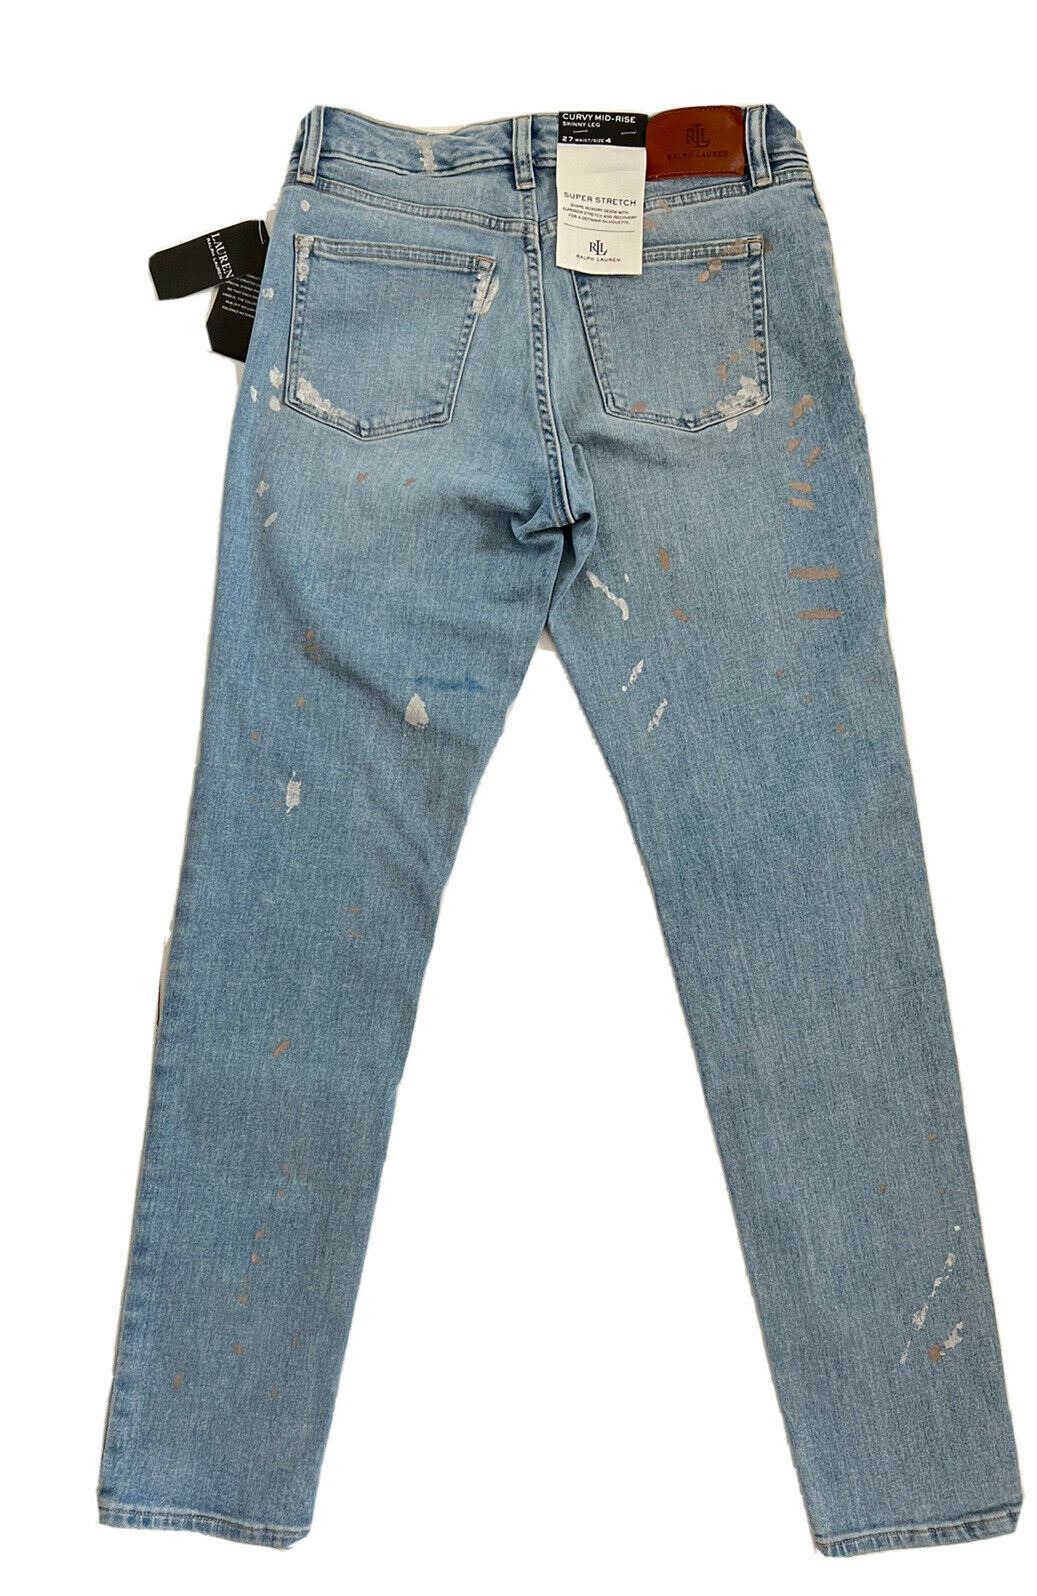 Neu mit Etikett: 99,95 $ Lauren Ralph Lauren Skinny Leg Blue Jeans Größe 4 (27 Taille) 